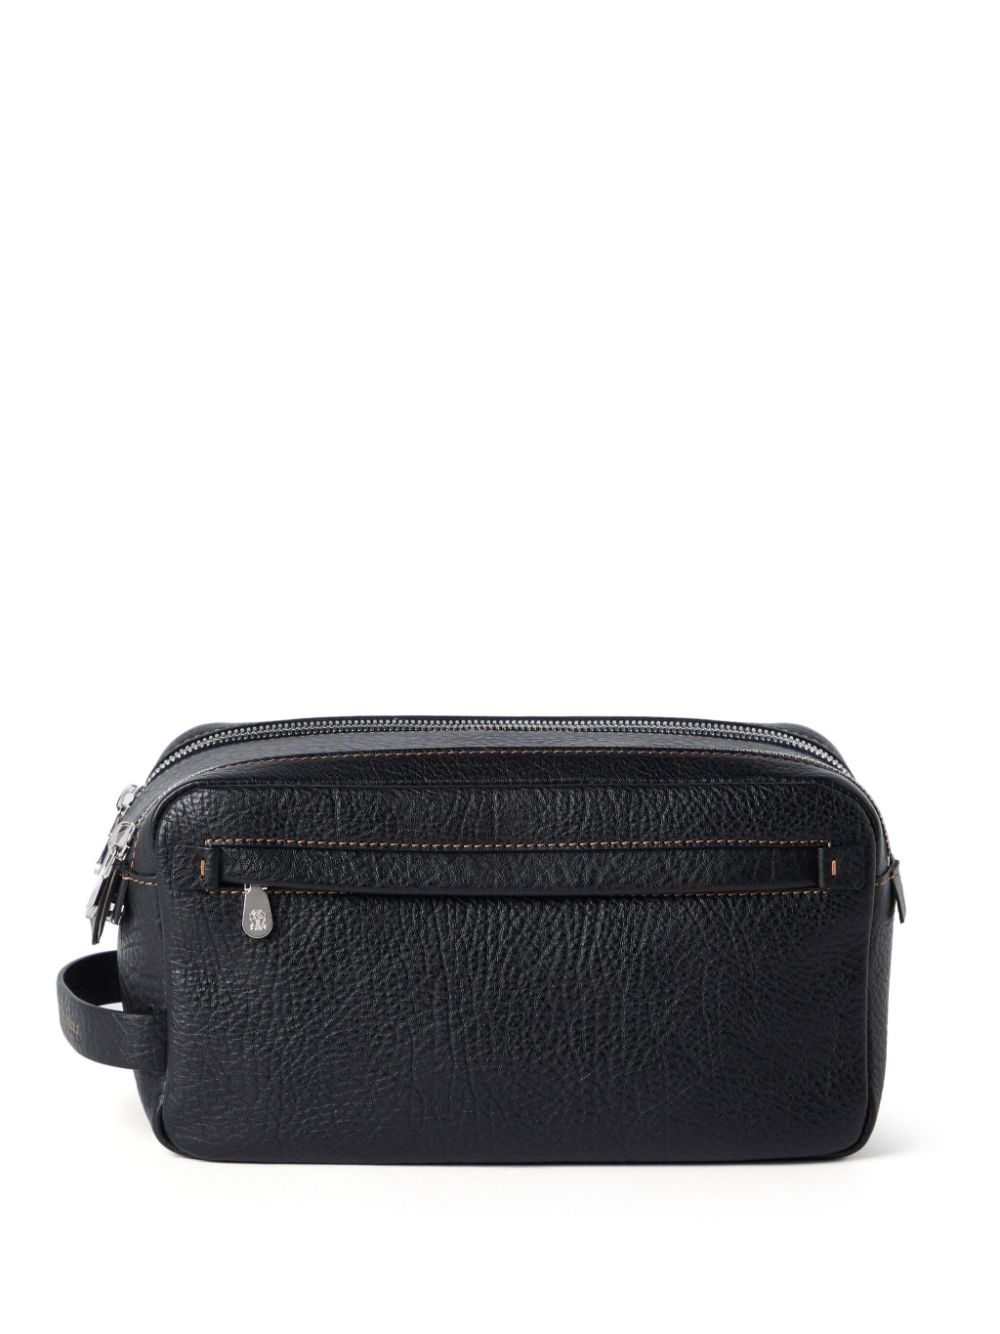 Brunello Cucinelli Full-grain Leather Wash Bag In Black